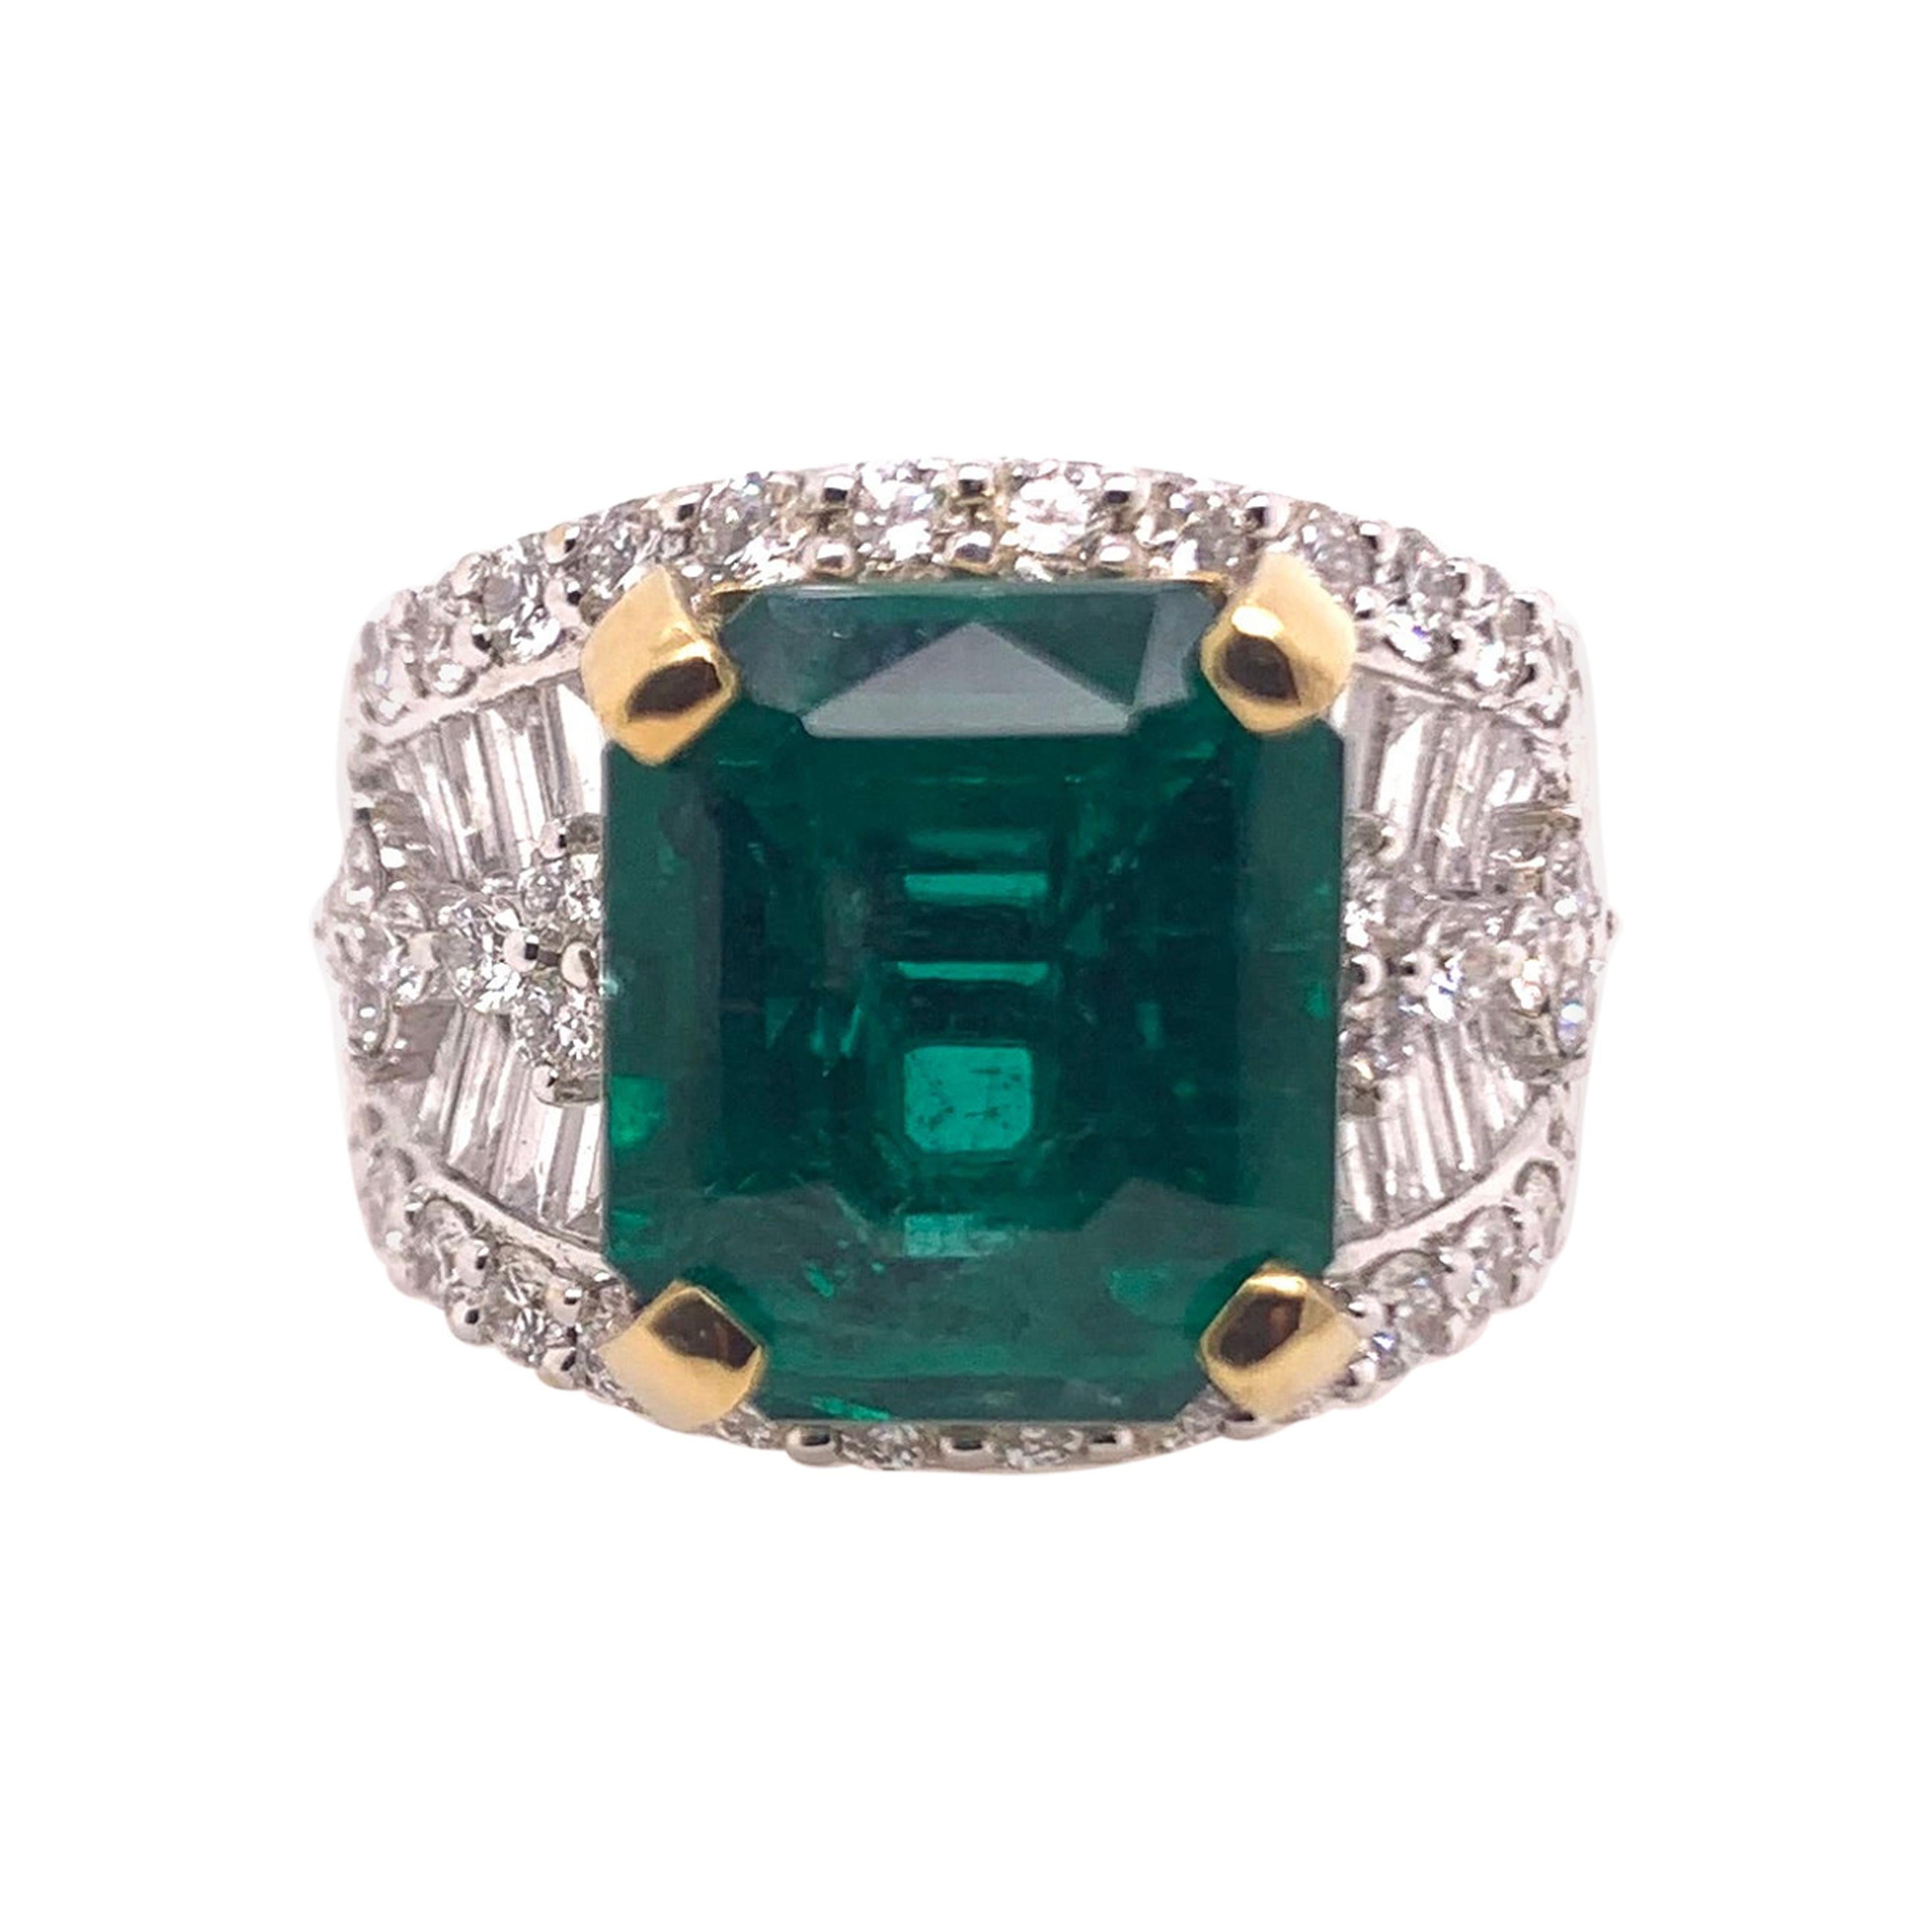 Zambian Emerald Diamond Cocktail Band Ring